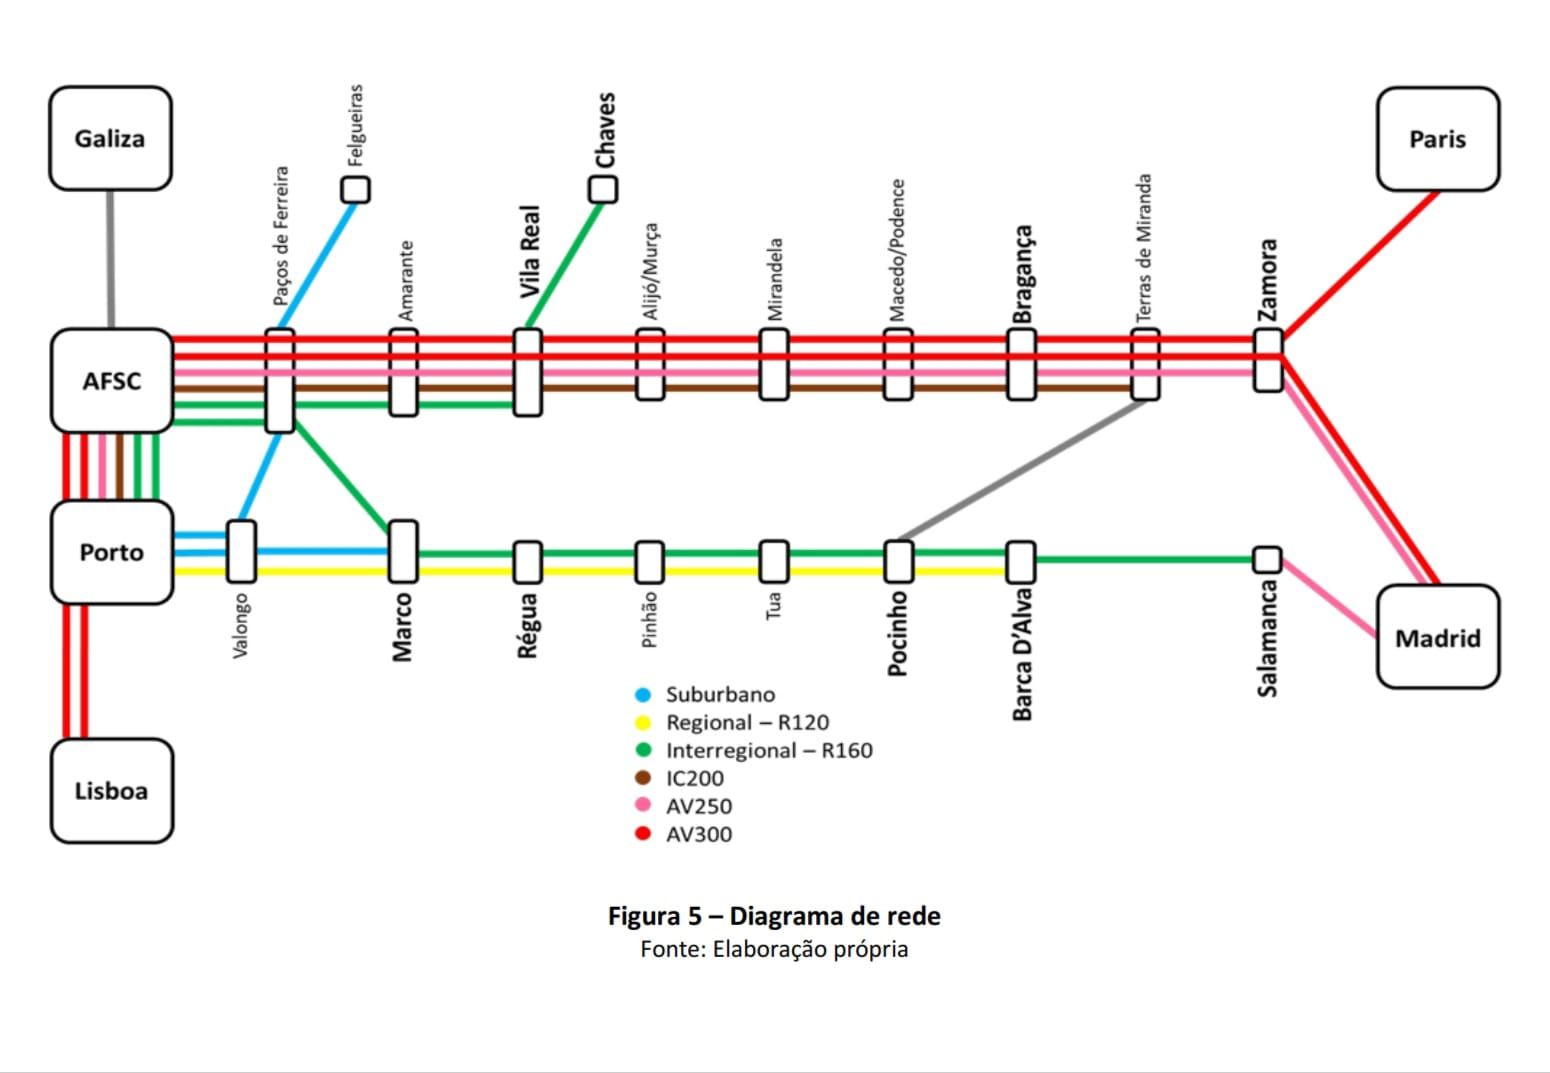 Diagrama de la red ferroviaria propuesta para el norte de Portugal.